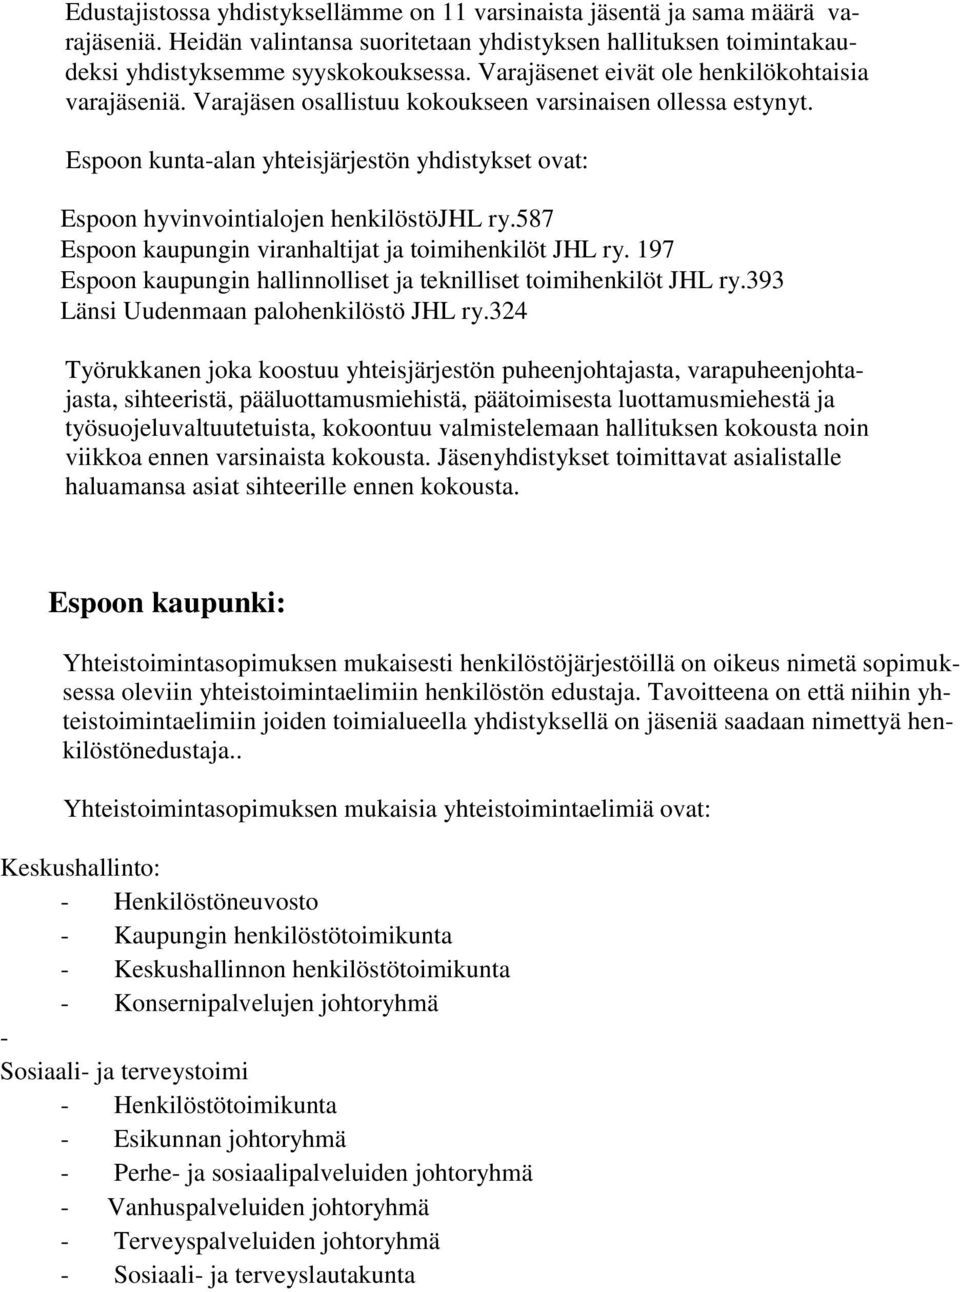 Espoon kunta-alan yhteisjärjestön yhdistykset ovat: Espoon hyvinvointialojen henkilöstöjhl ry.587 Espoon kaupungin viranhaltijat ja toimihenkilöt JHL ry.